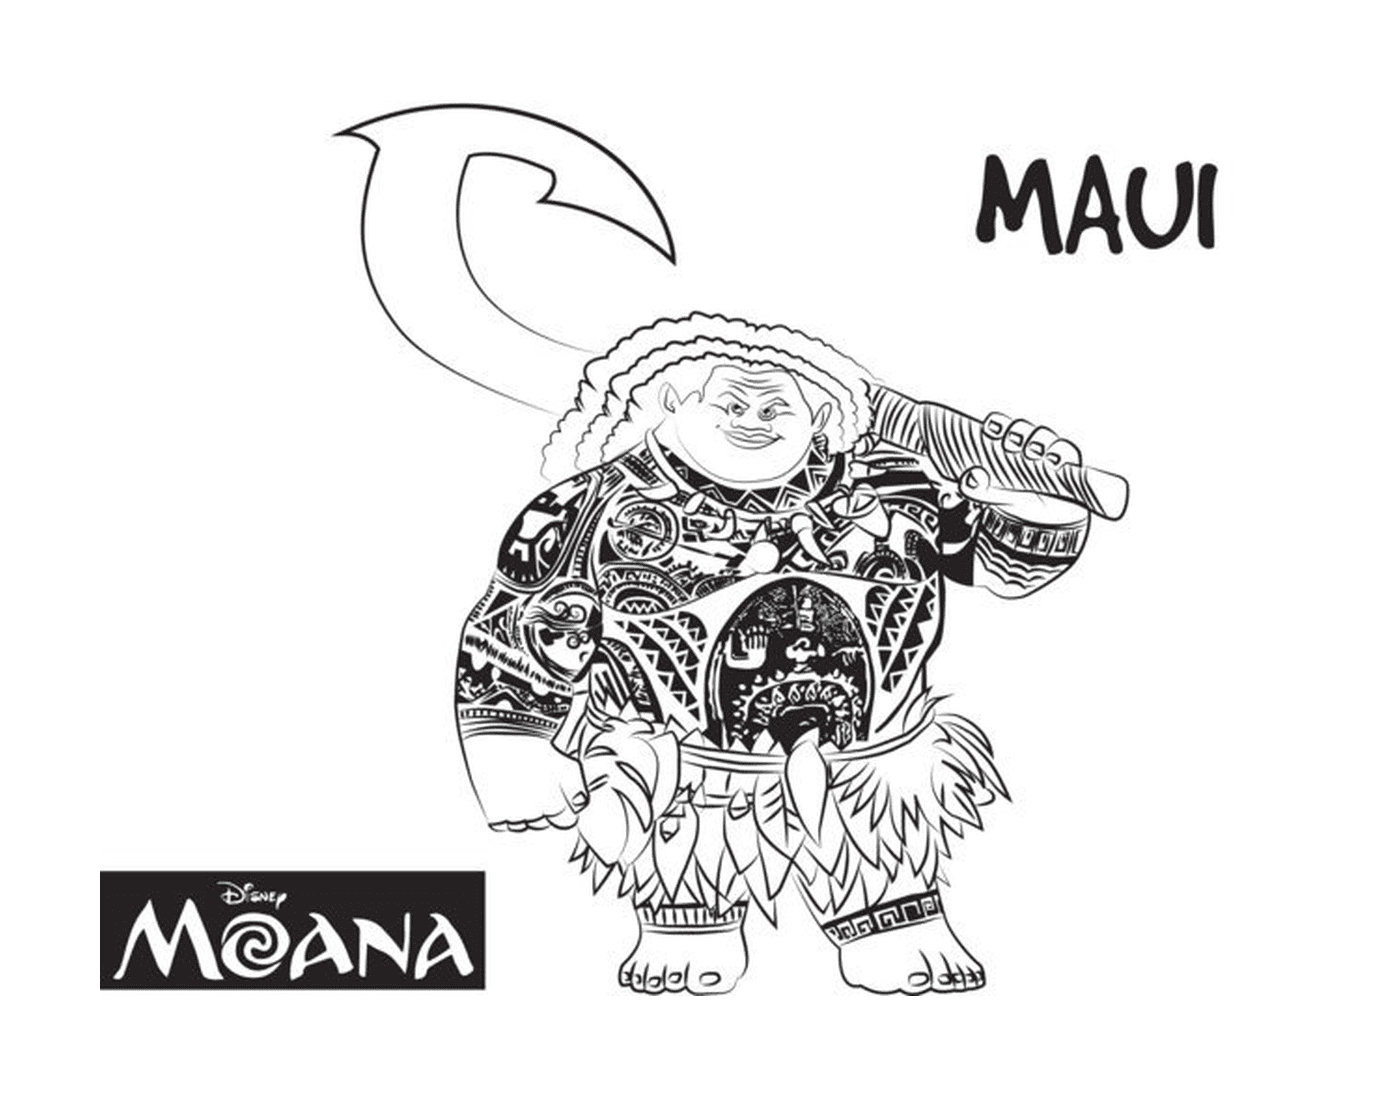   Maui, homme fort de Moana 